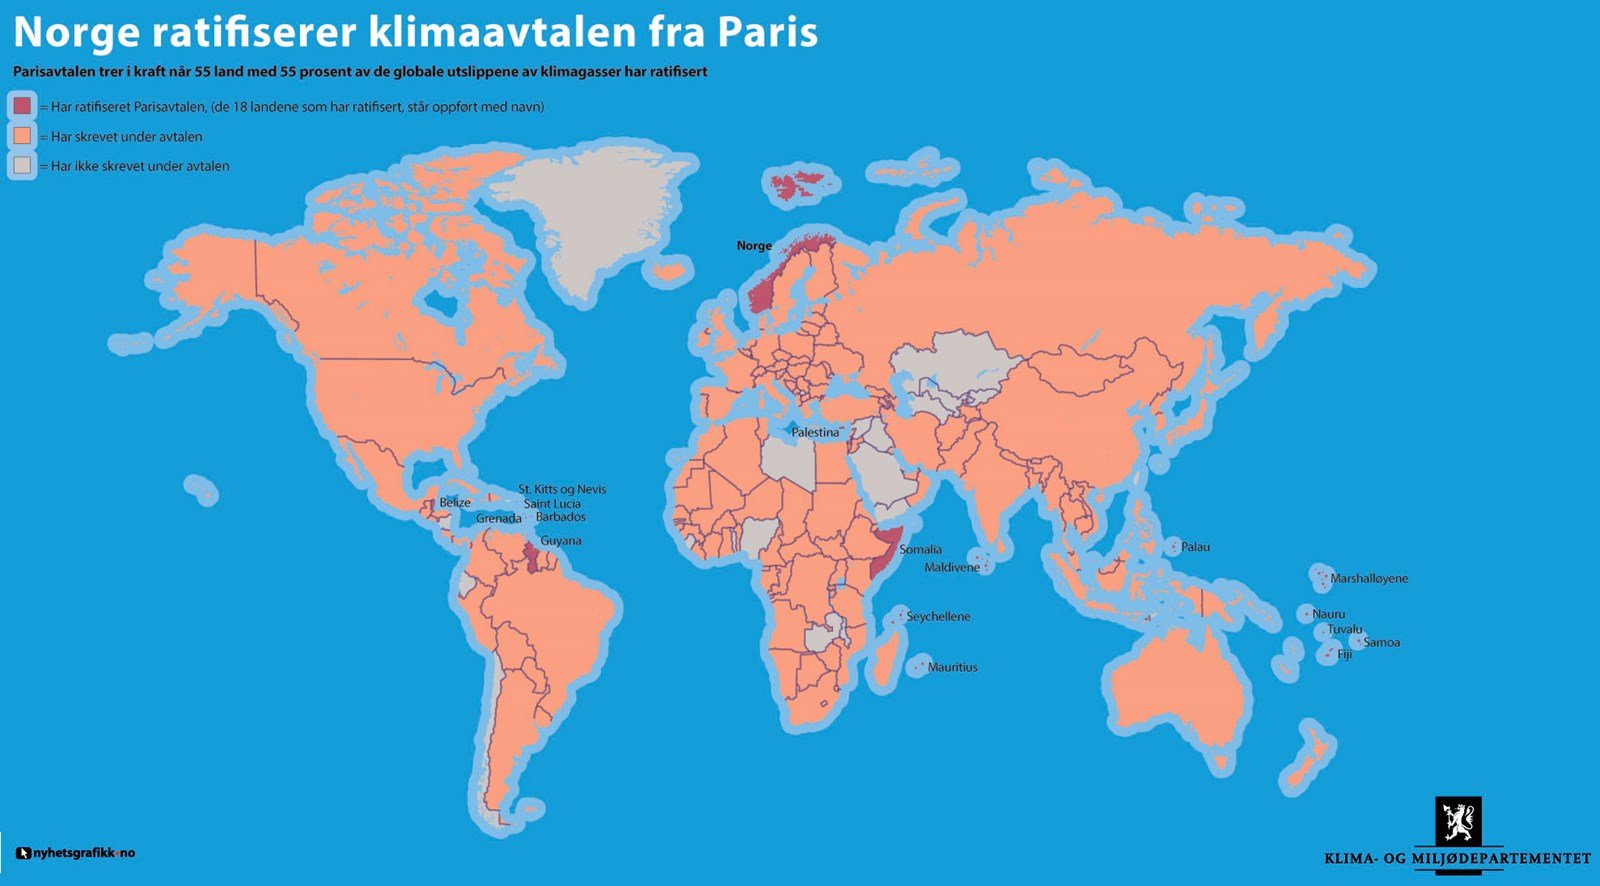 I tillegg til Norge, har Somalia, Palestina og 15 mindre øystater så langt ratifisert Parisavtalen. Til sammen står disse landene for rundt 0,2 prosent av verdens globale utslipp. 177 land har signert avtalen. Kart: Nyhetsgrafikk.no.